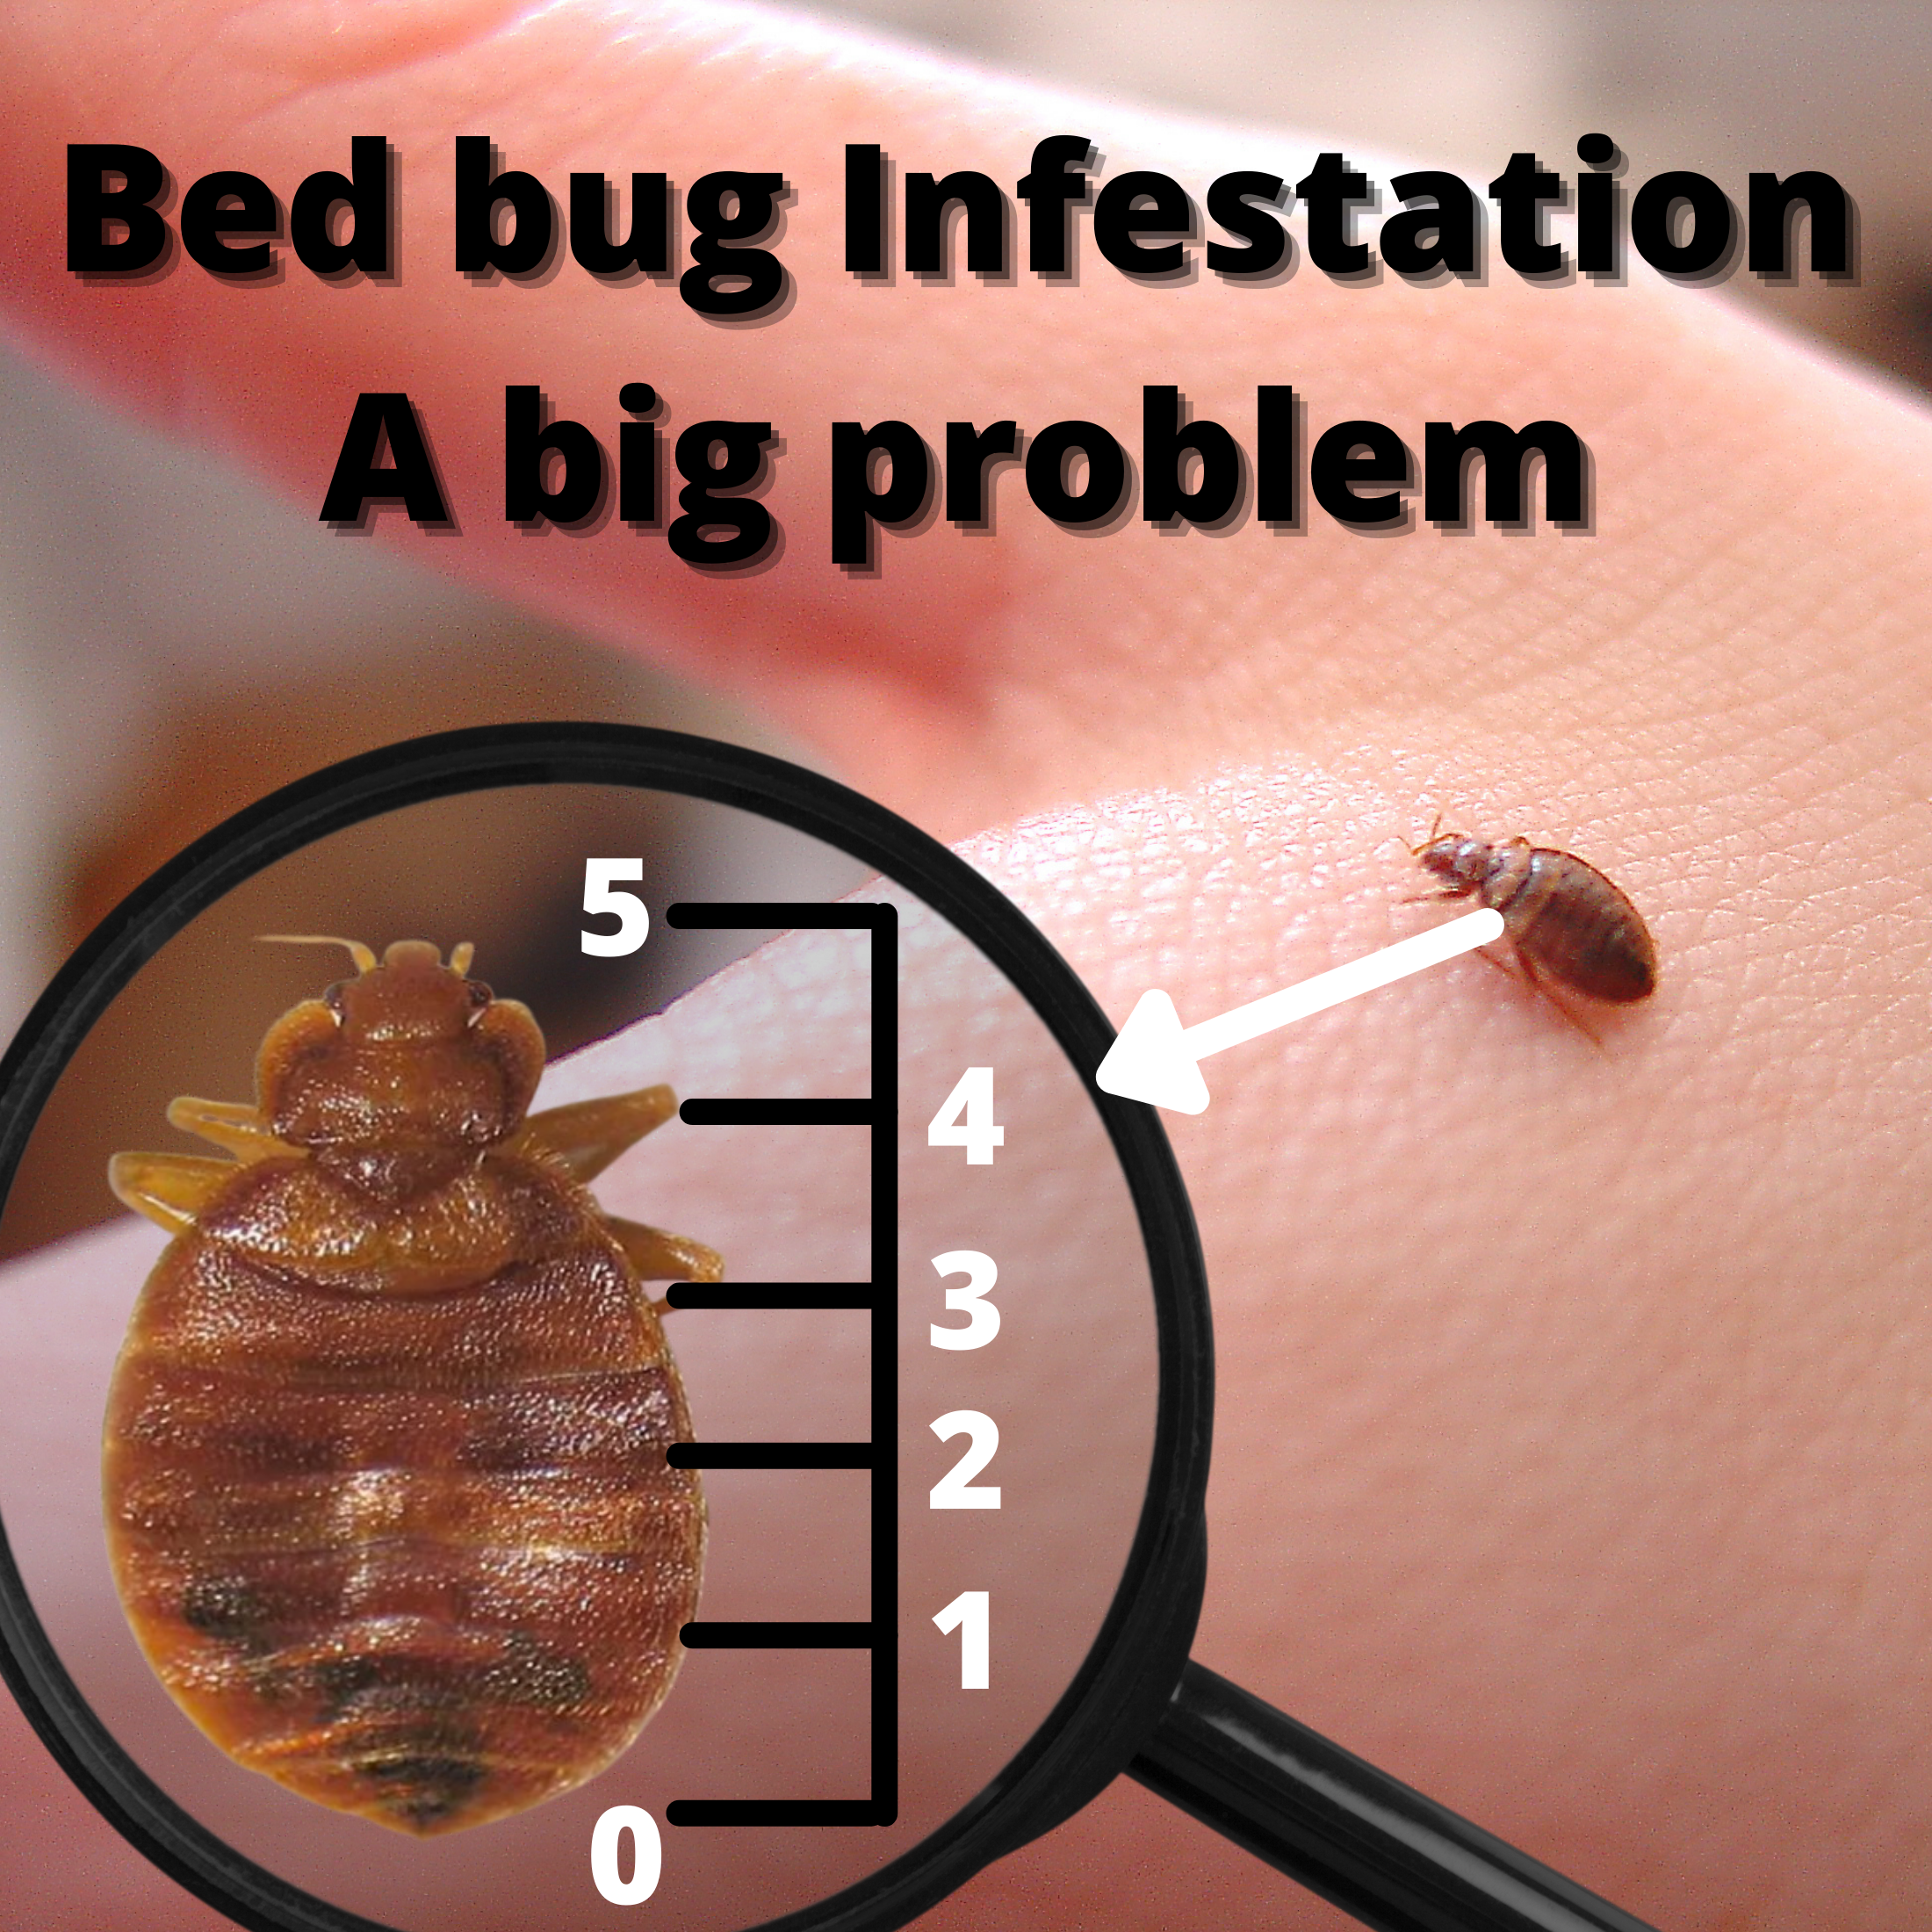 Bed bug infestation - A big problem